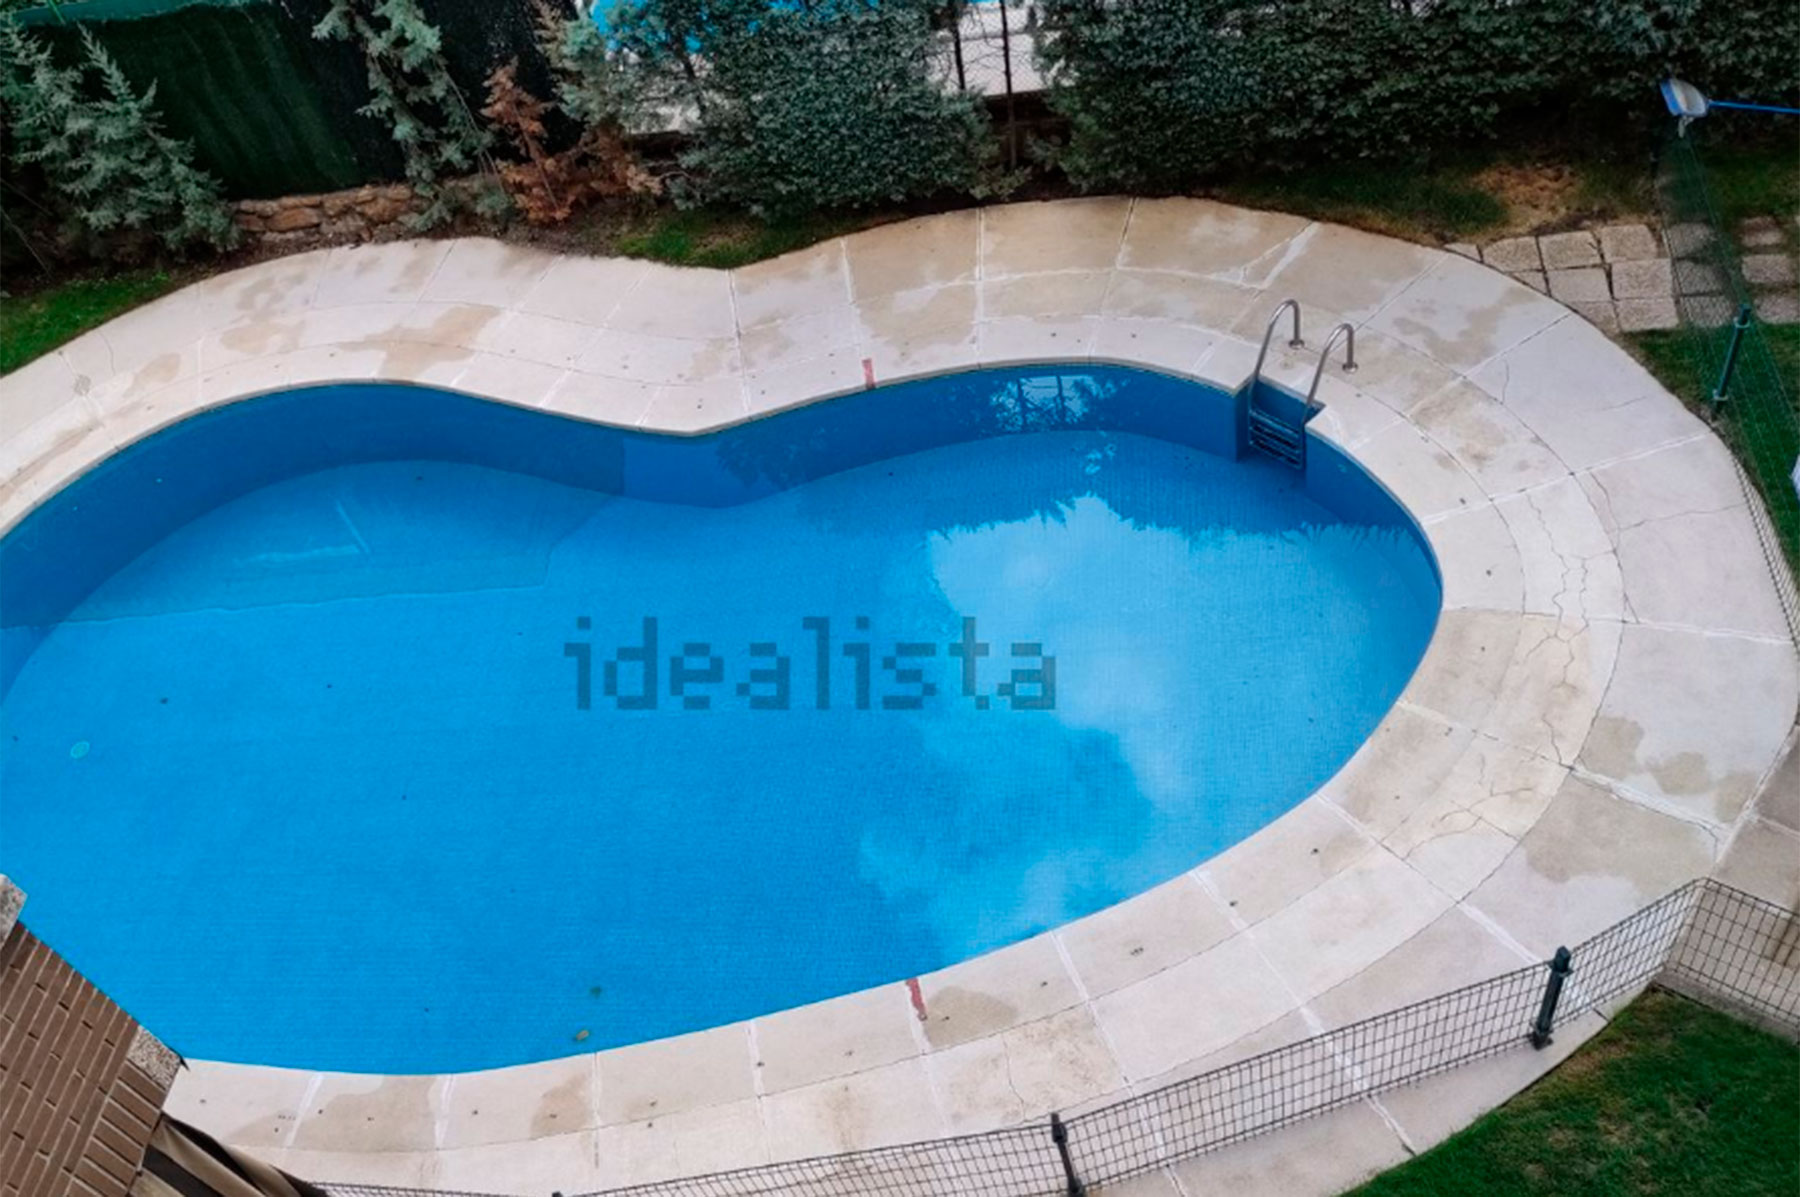 Así es la piscina de la nueva casa de Raquel Mosquera / Idealista